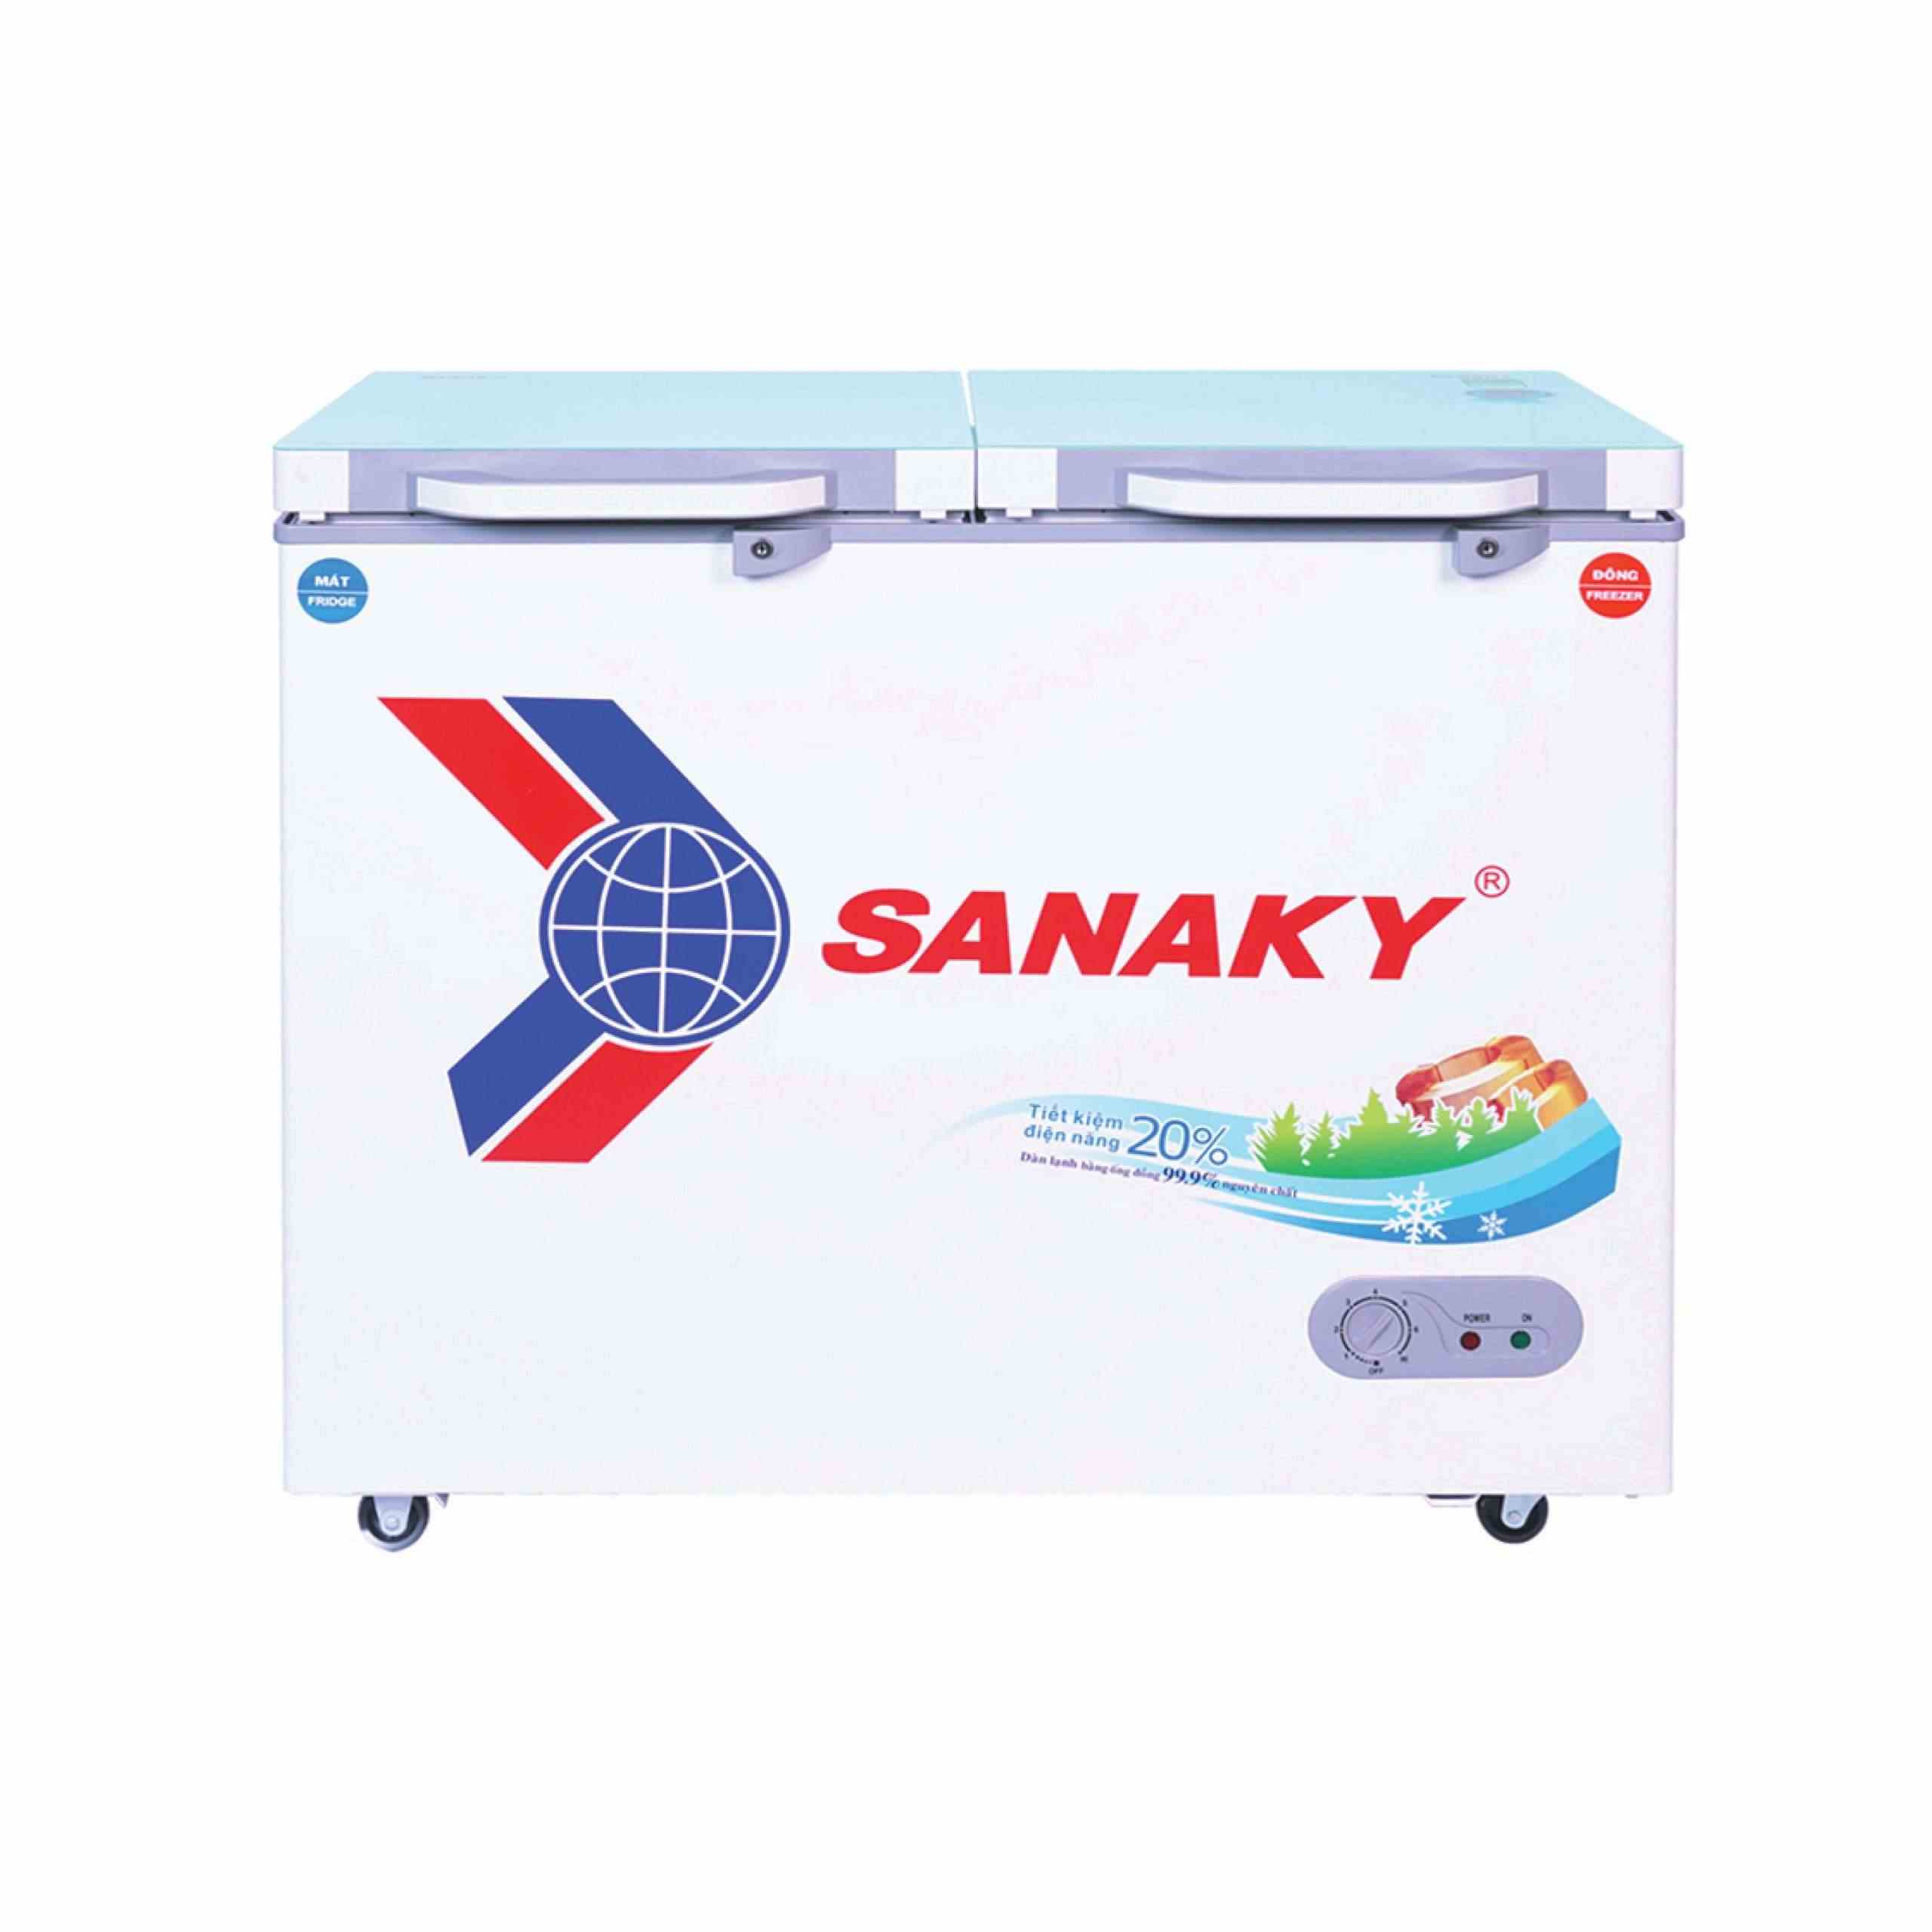 Tủ đông Sanaky 280 lít VH-4099W2KD 2 ngăn - Chính hãng